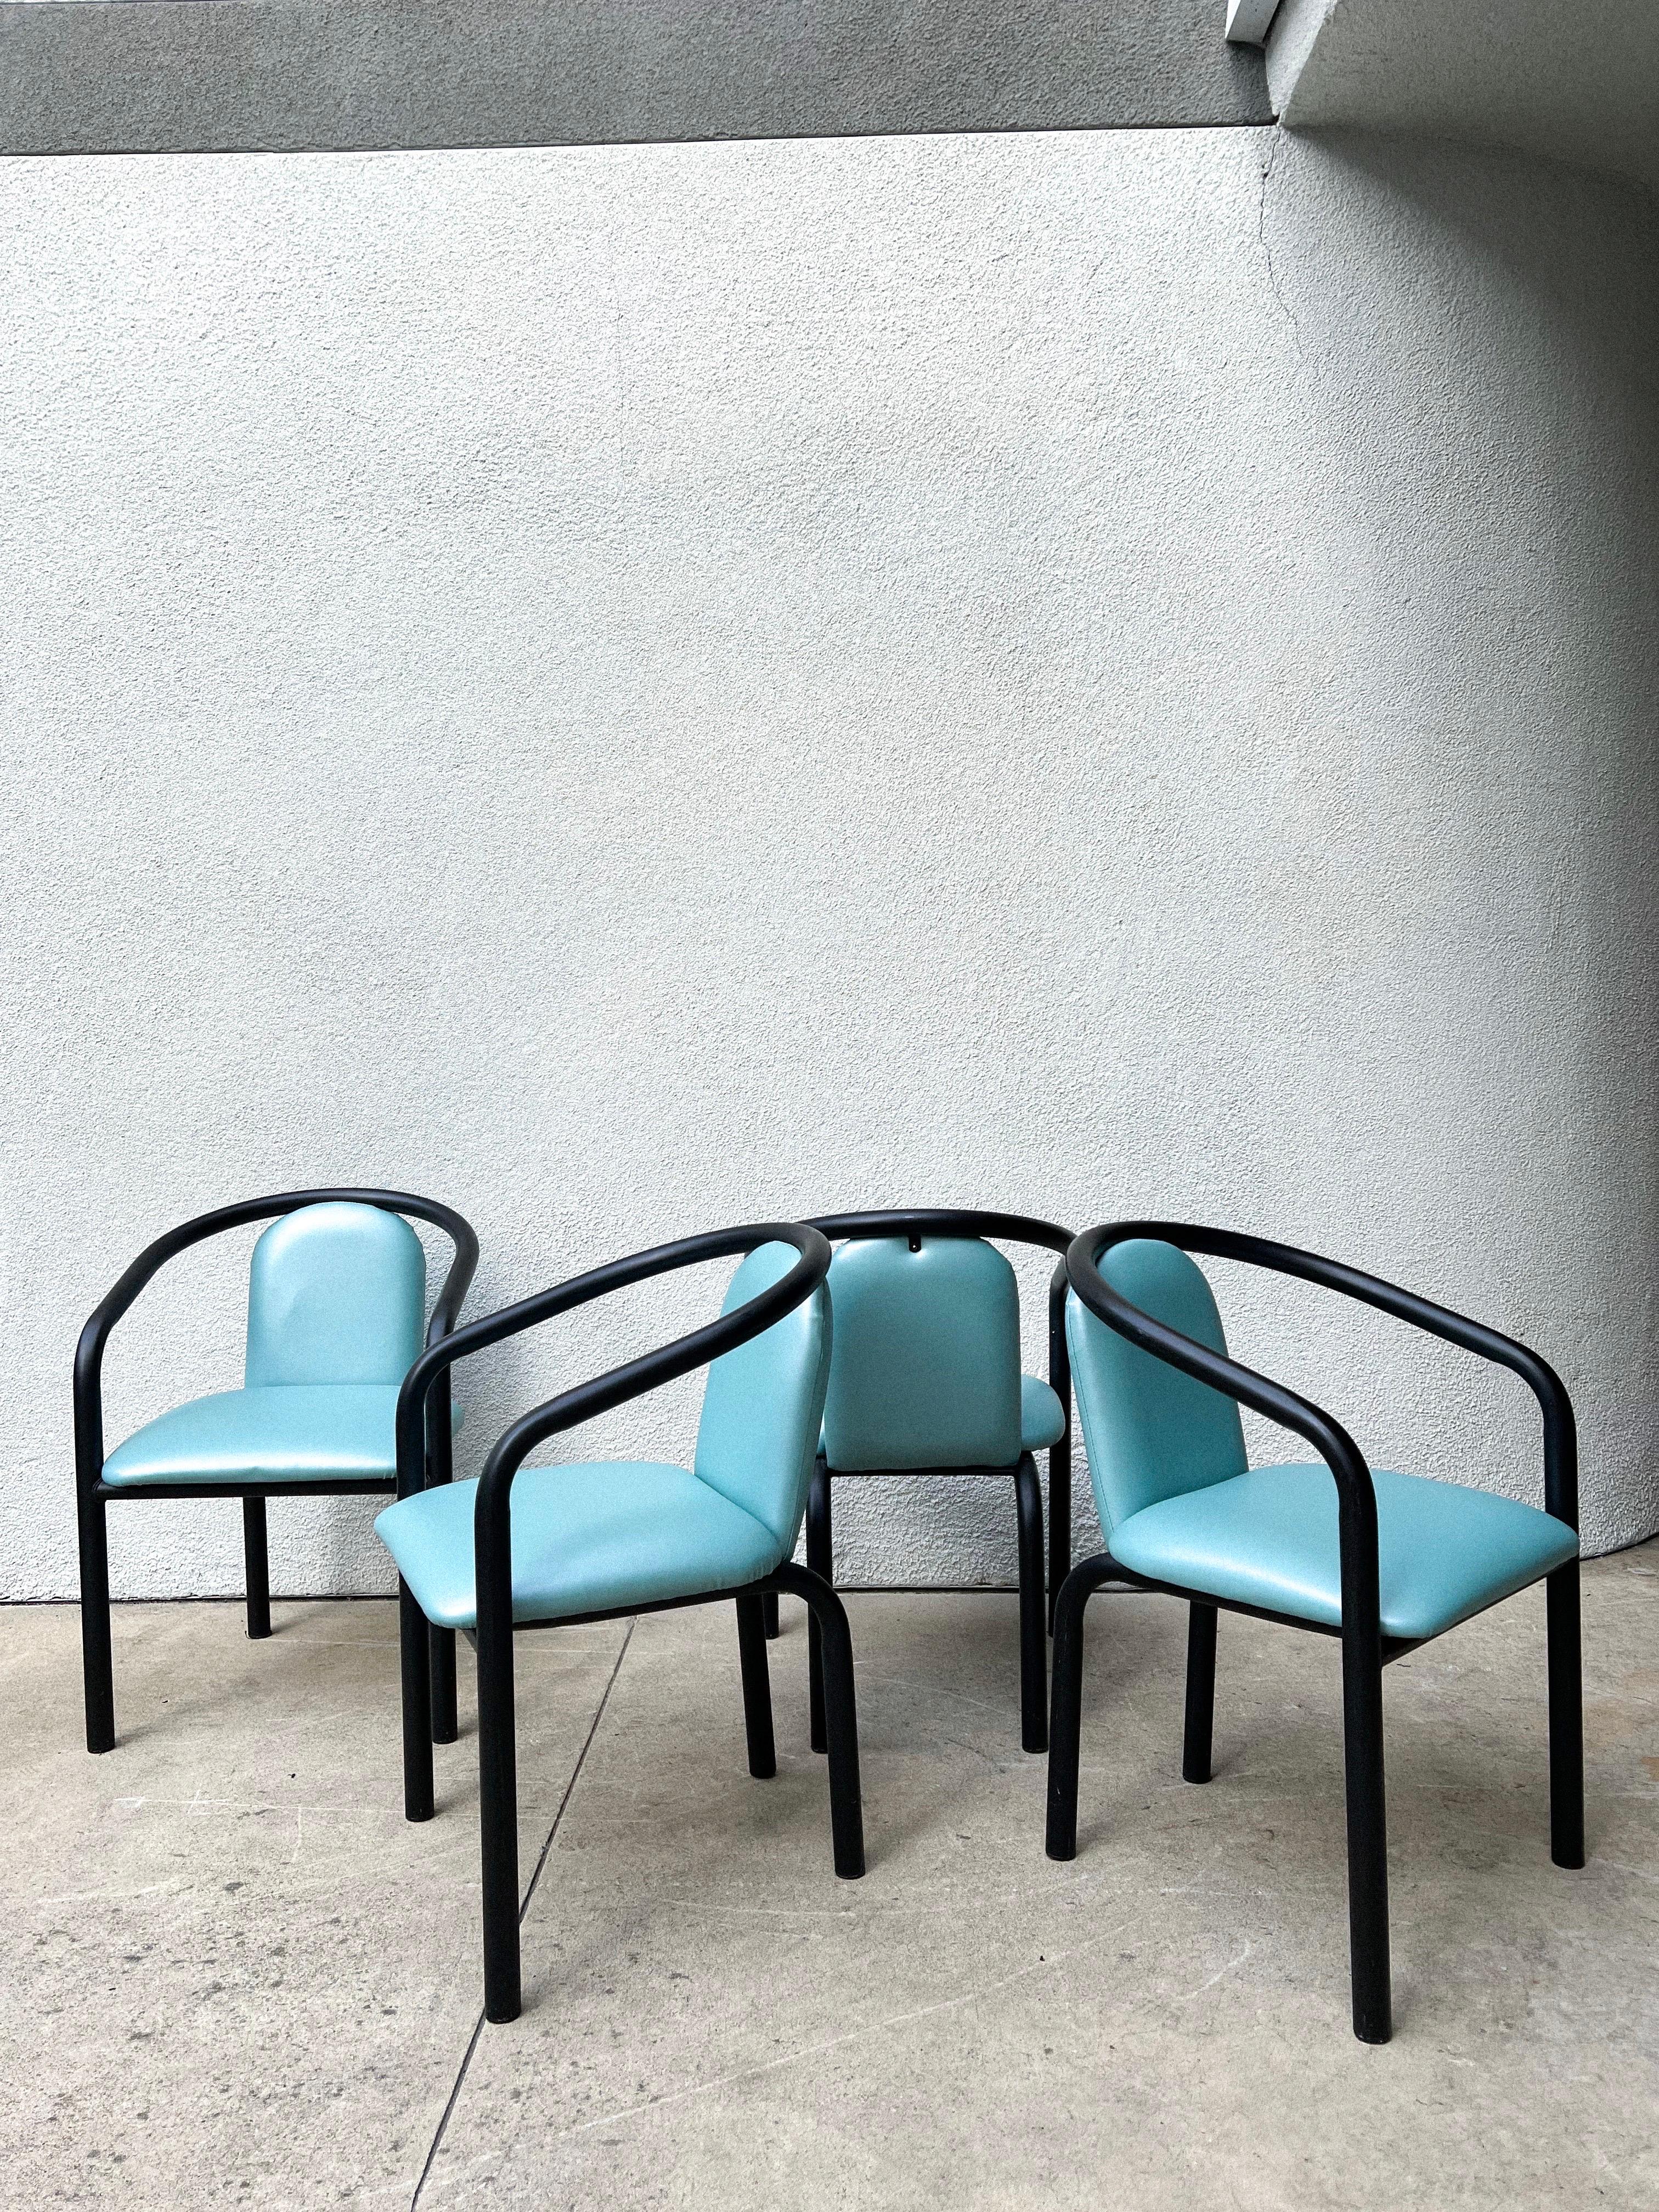 Set aus 4 postmodernen Stühlen mit schwarzem, klobigem/rohrförmigem Metallgestell und makelloser Polsterung aus aquafarbenem Vinyl.